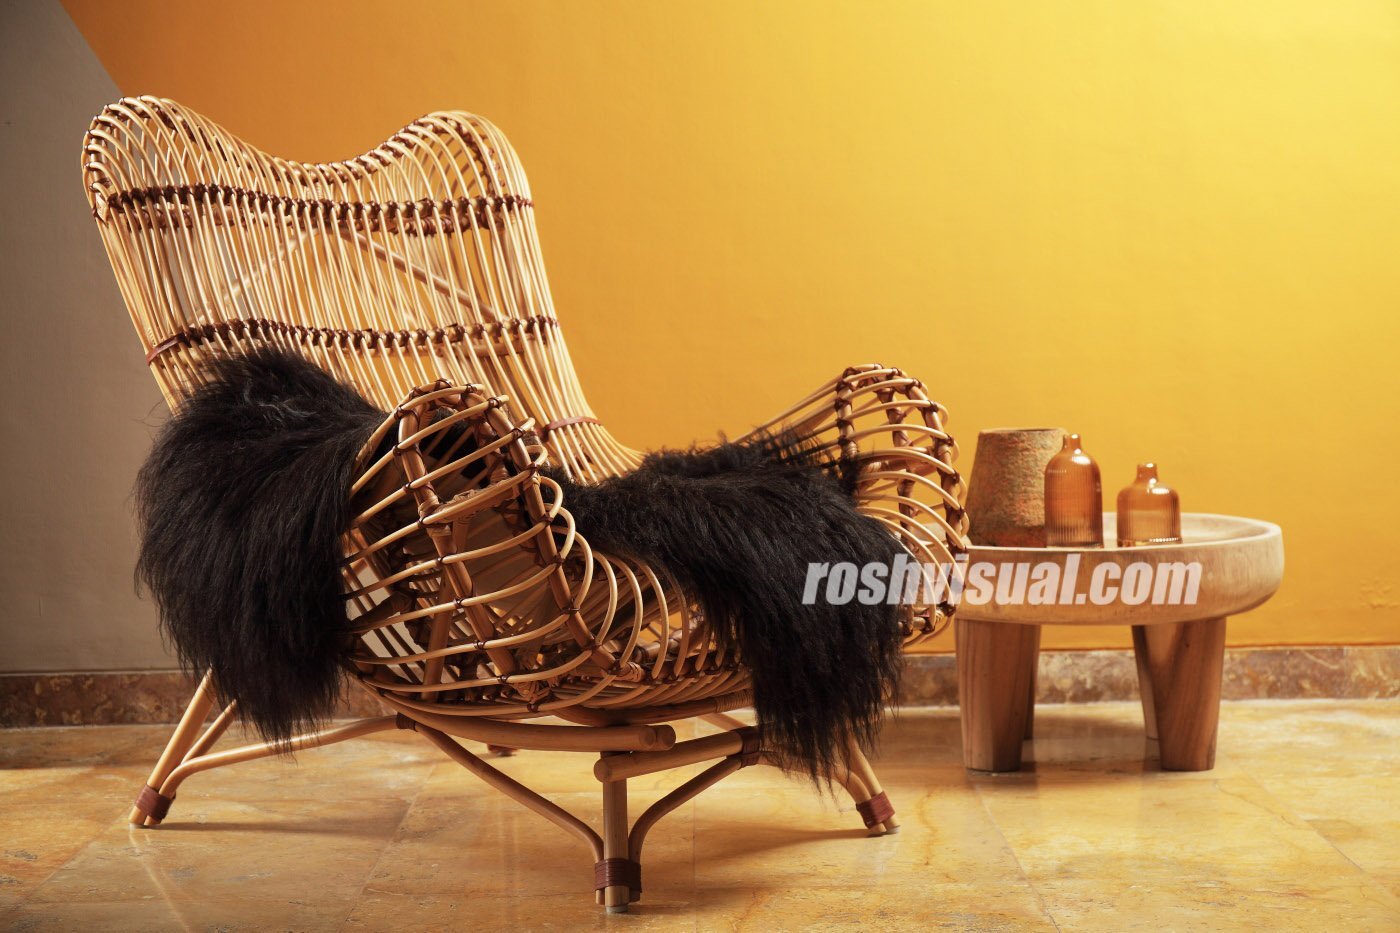 Fotografer Furniture Cirebon  Roshvisual